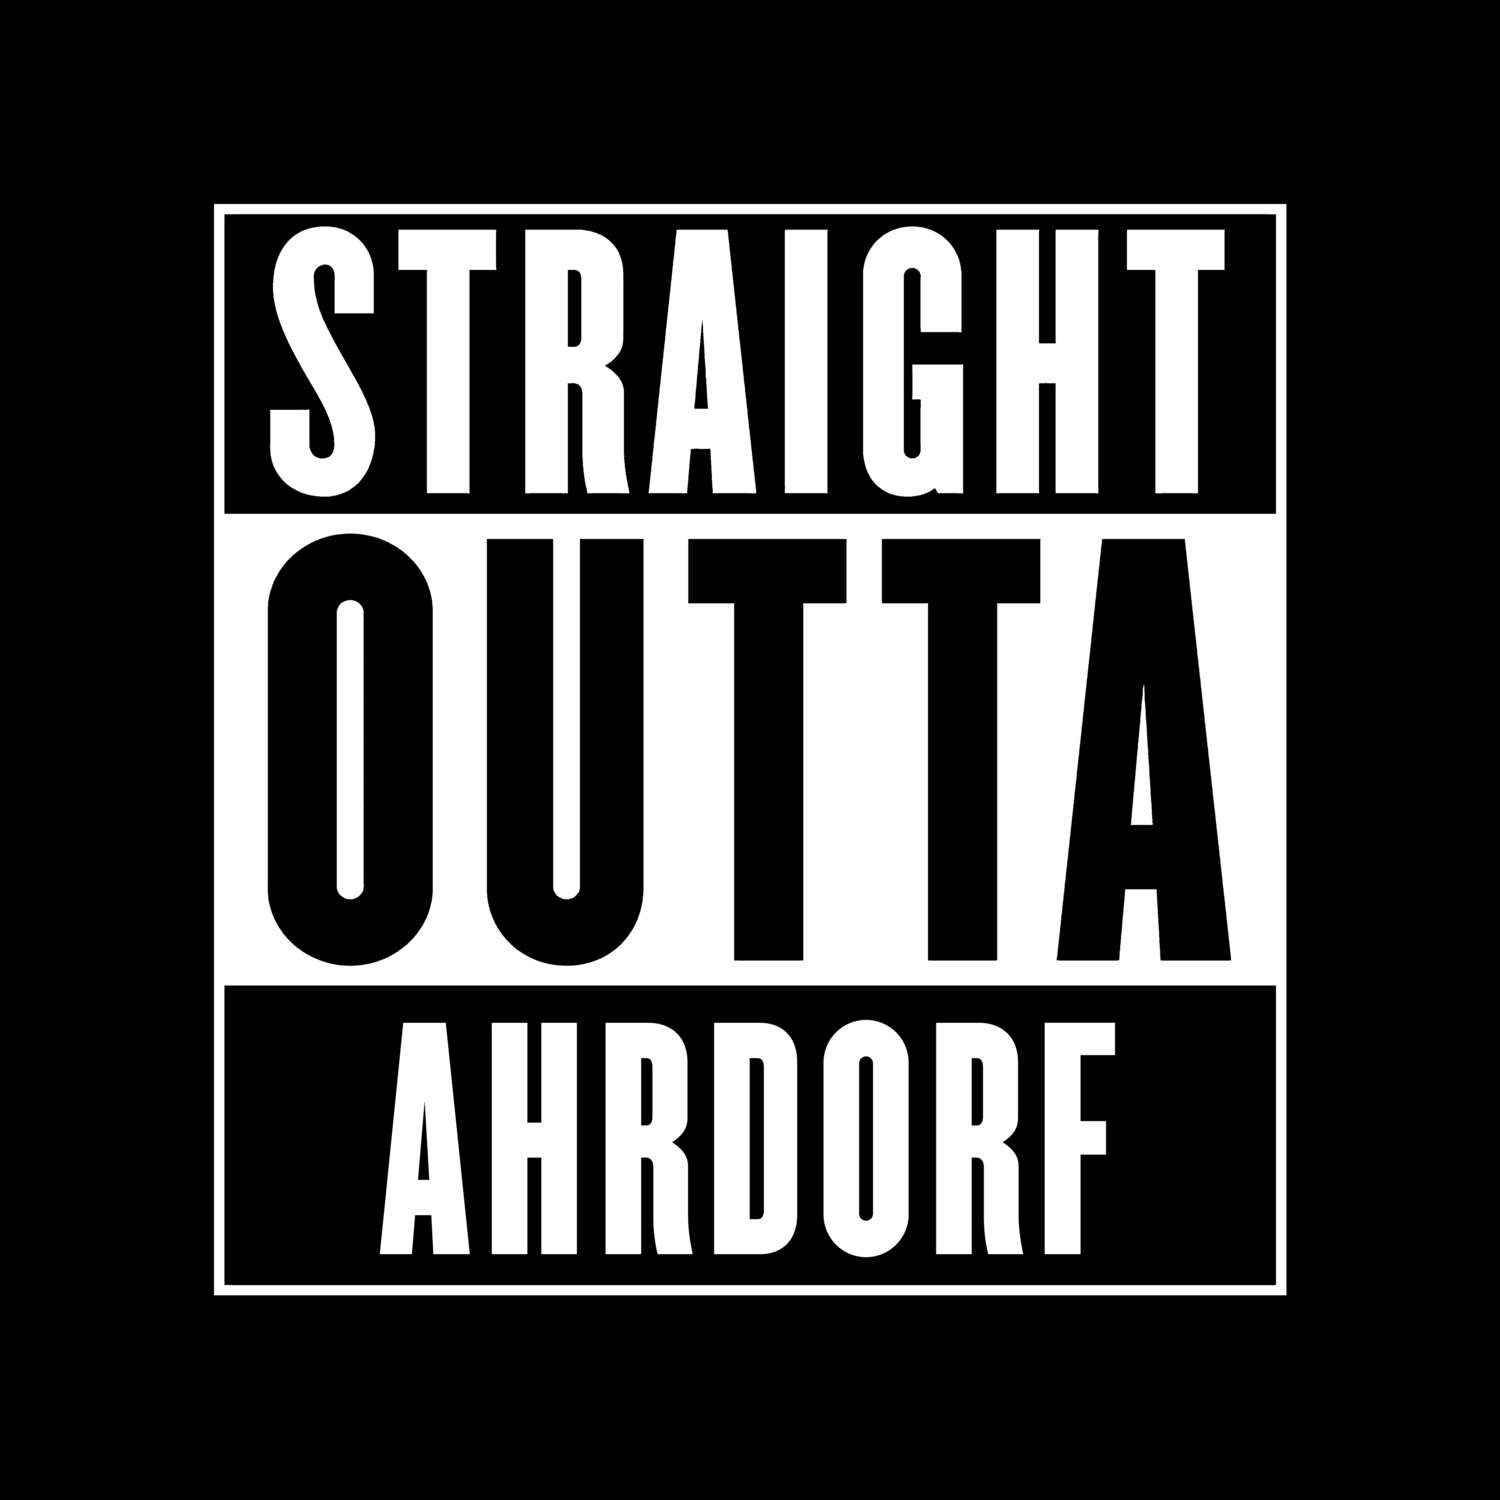 Ahrdorf T-Shirt »Straight Outta«